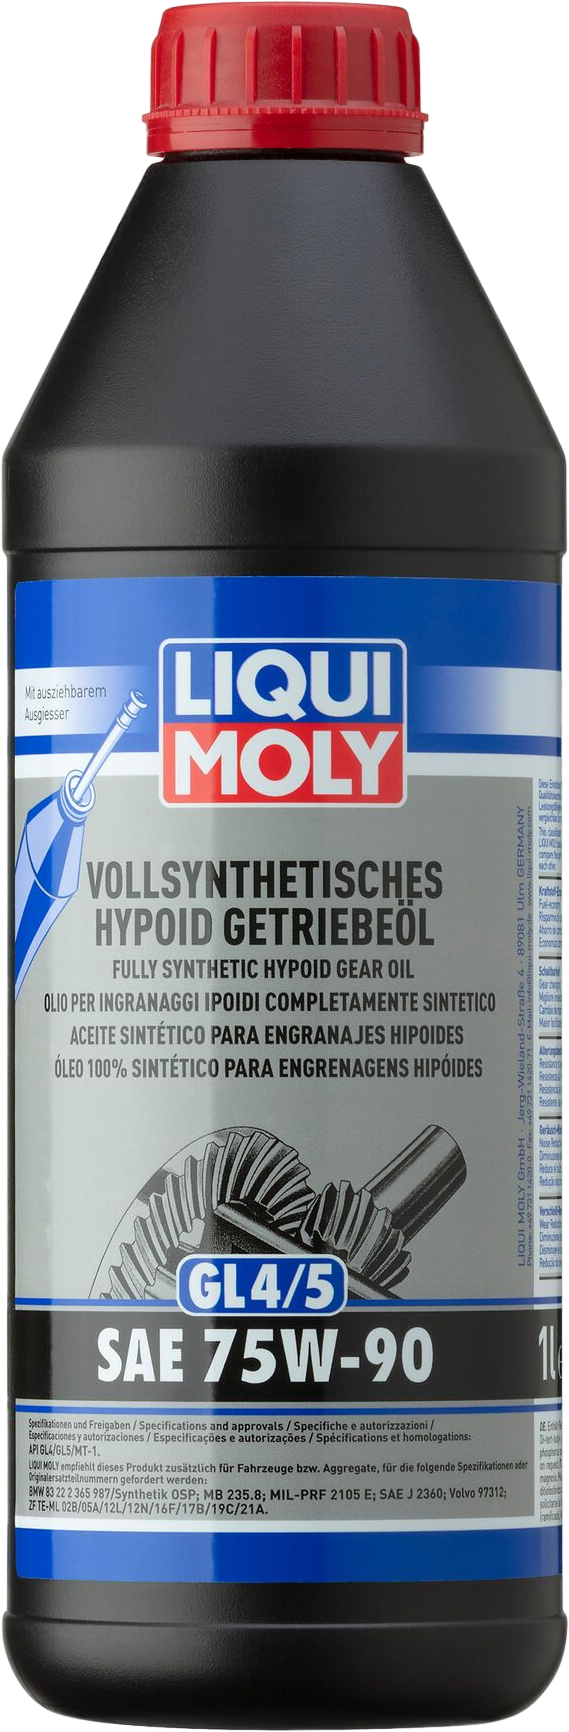 Liqui Moly Volsynthetische Hypoïdtransmissieolie (GL4/5) 75W-90, 6 x 1 lt detail 2